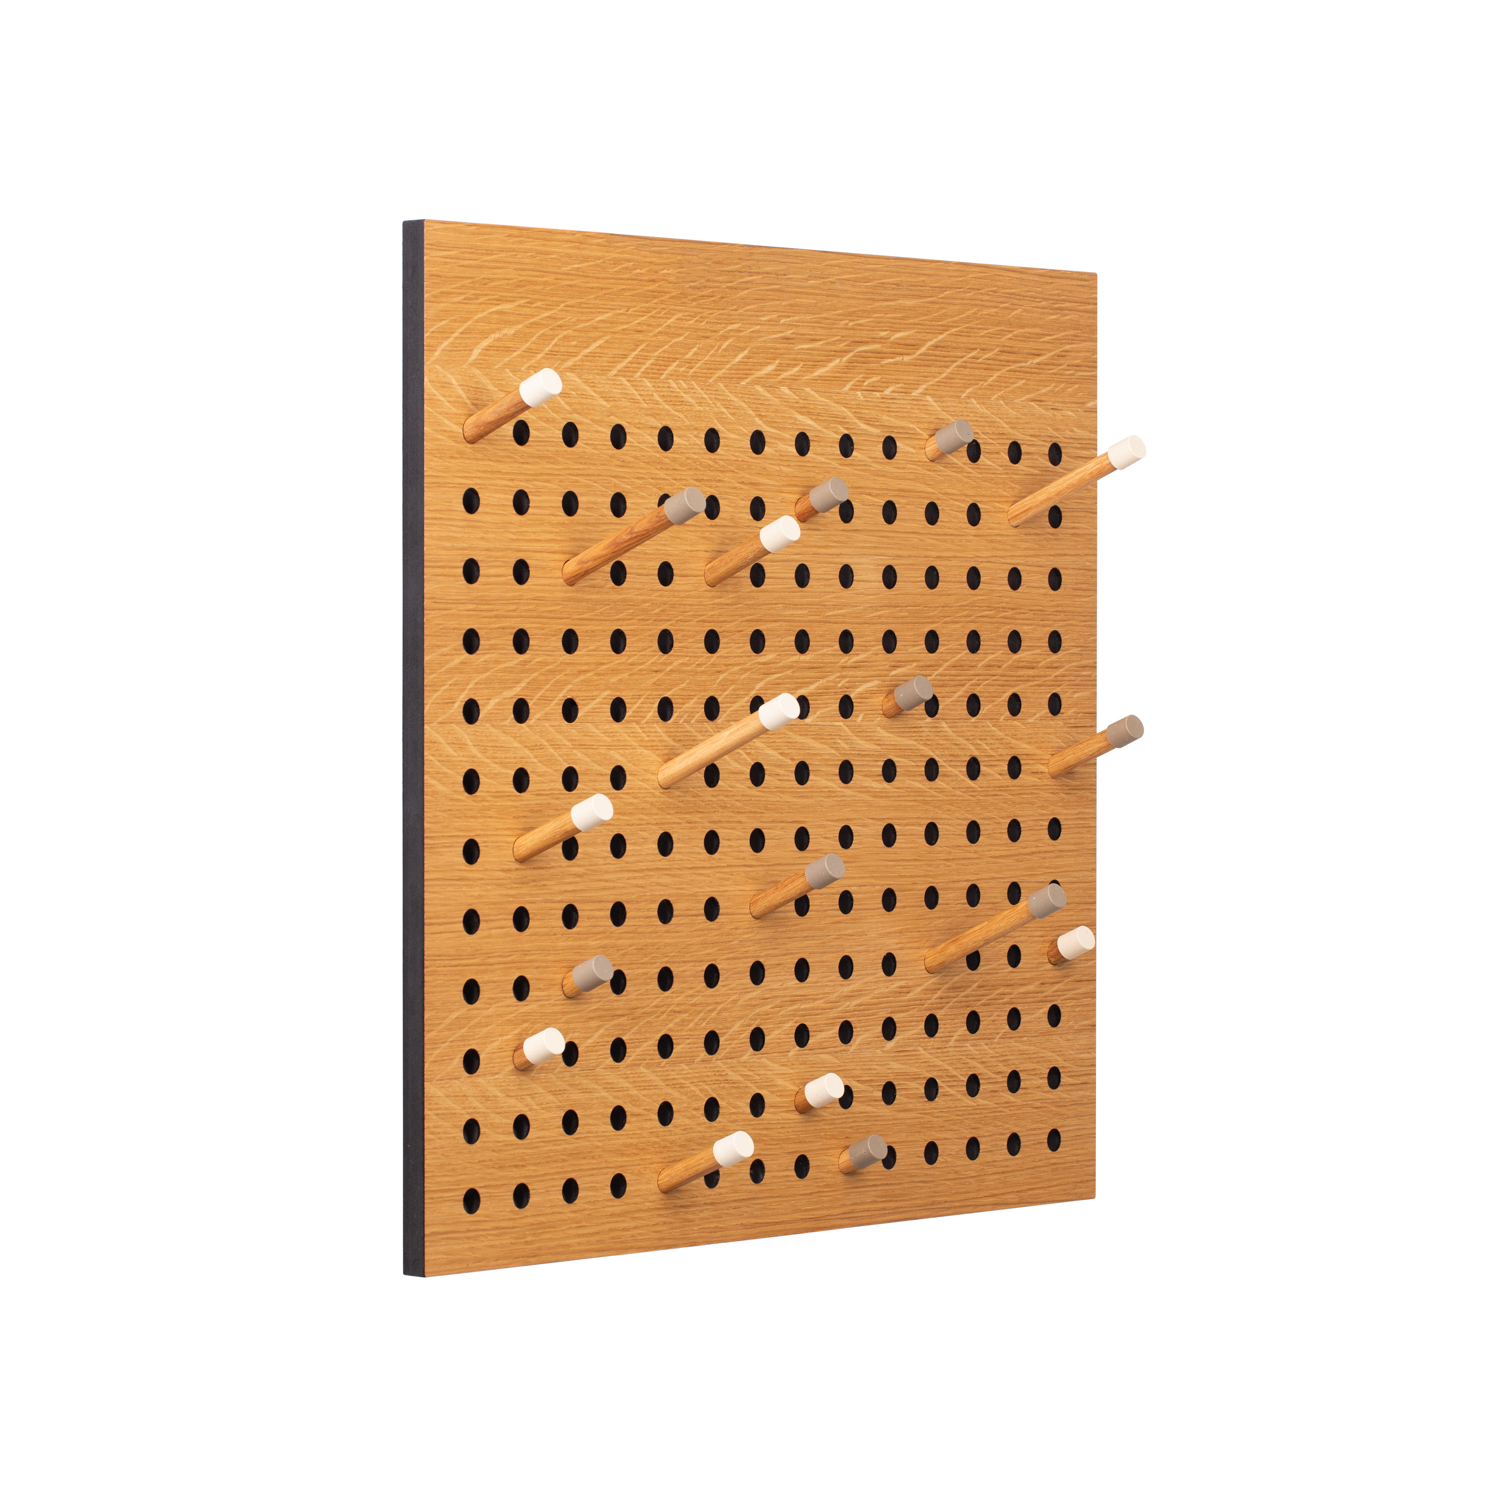 WE DO WOOD Scoreboard fyrkantig klädhängare, w. 18 krokar - naturlig ekfanér och trä